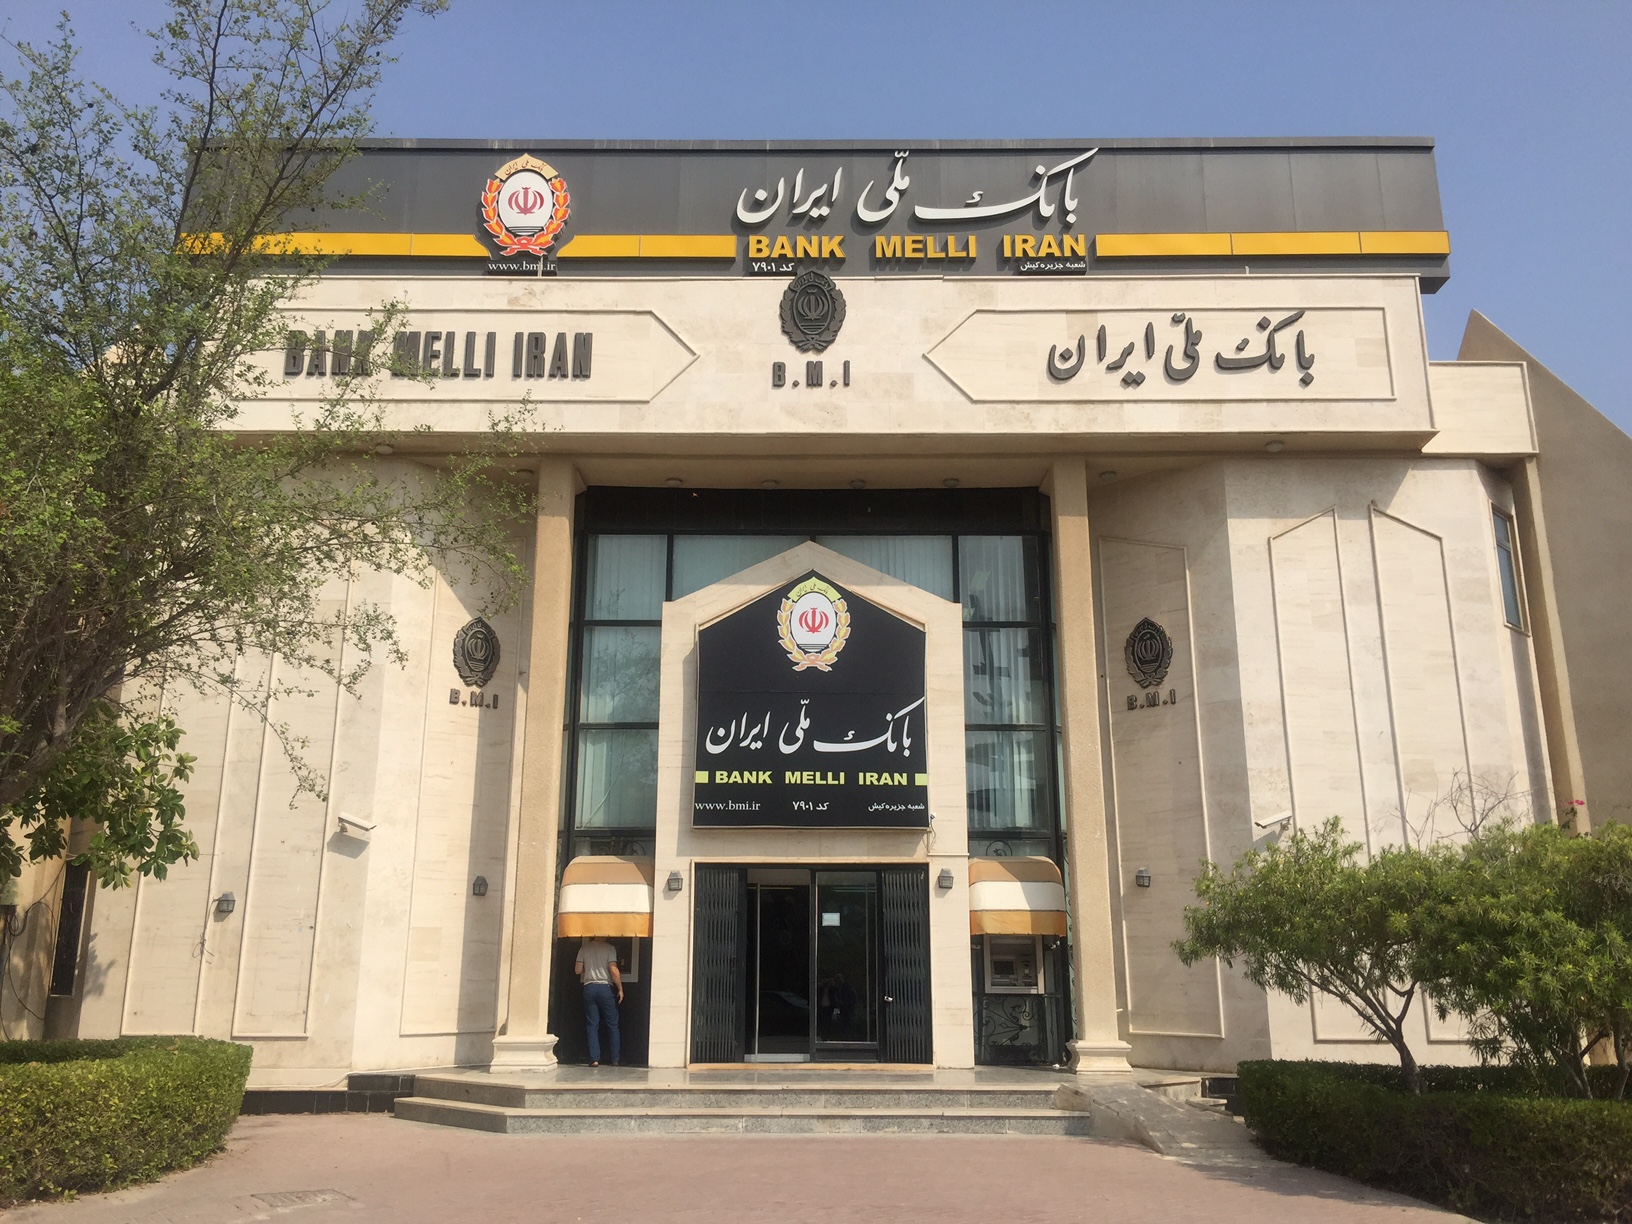 به گزارش خبر انرژی به نقل از روابط عمومی بانک ملی ایران، این بانک در سی‌وچهارمین نمایشگاه بین‌المللی کتاب تهران به عنوان بانک عامل آماده خدمت رسانی به ناشران متقاضی خواهد بود.